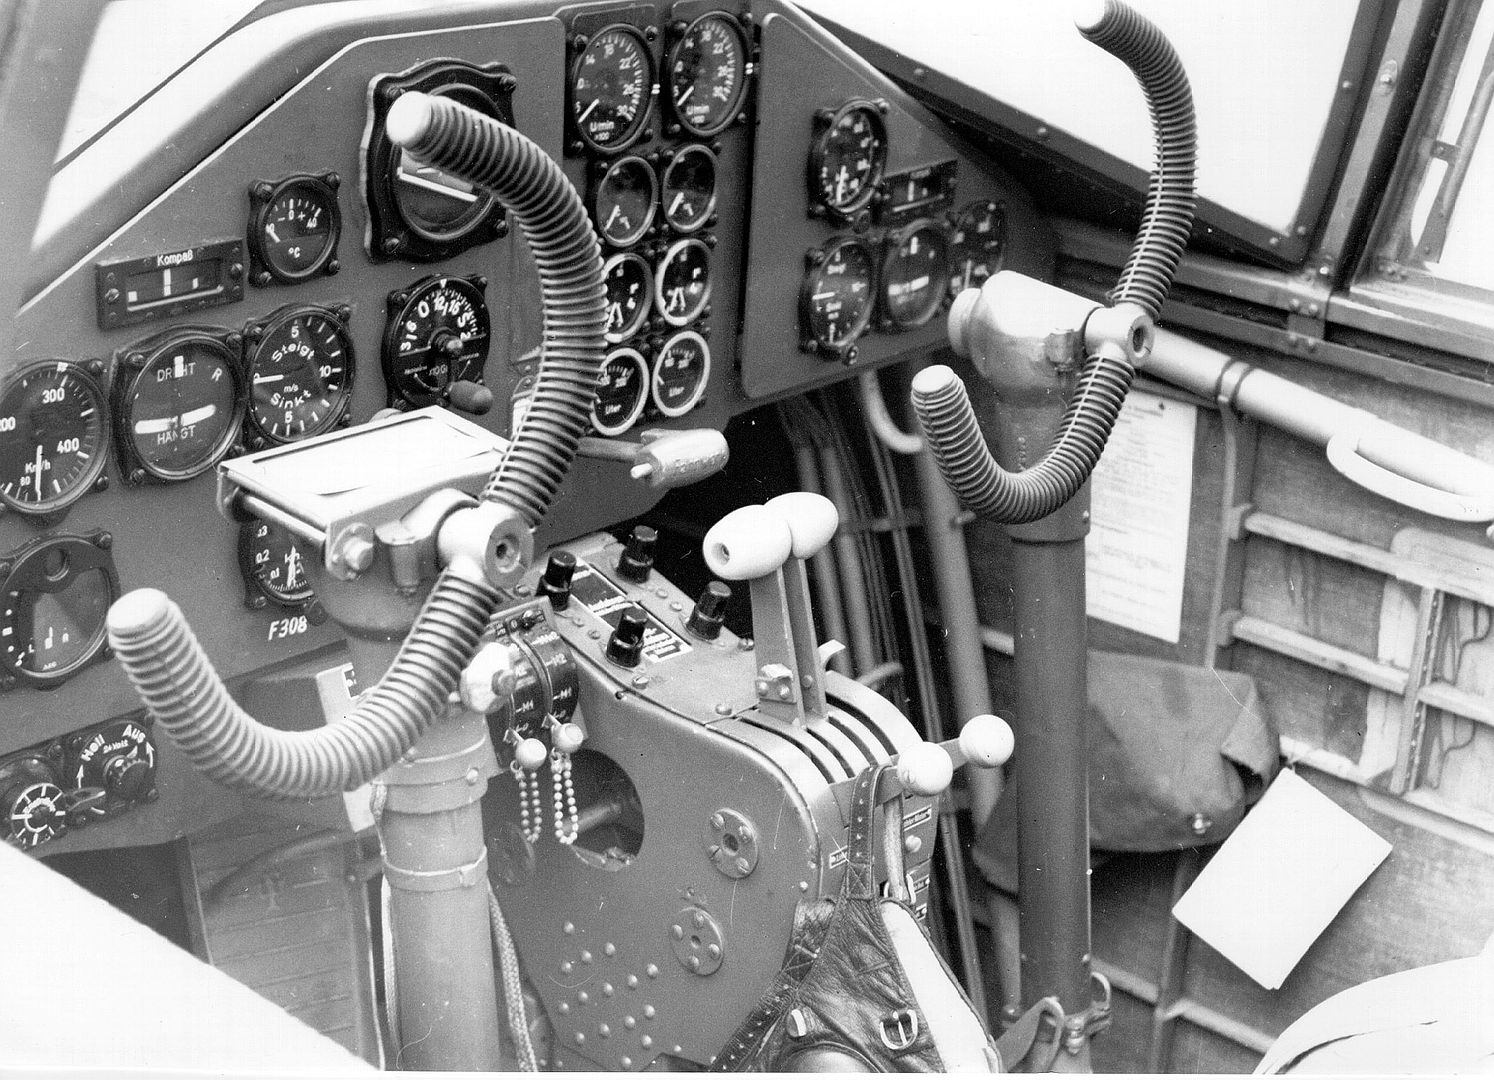  Cockpit